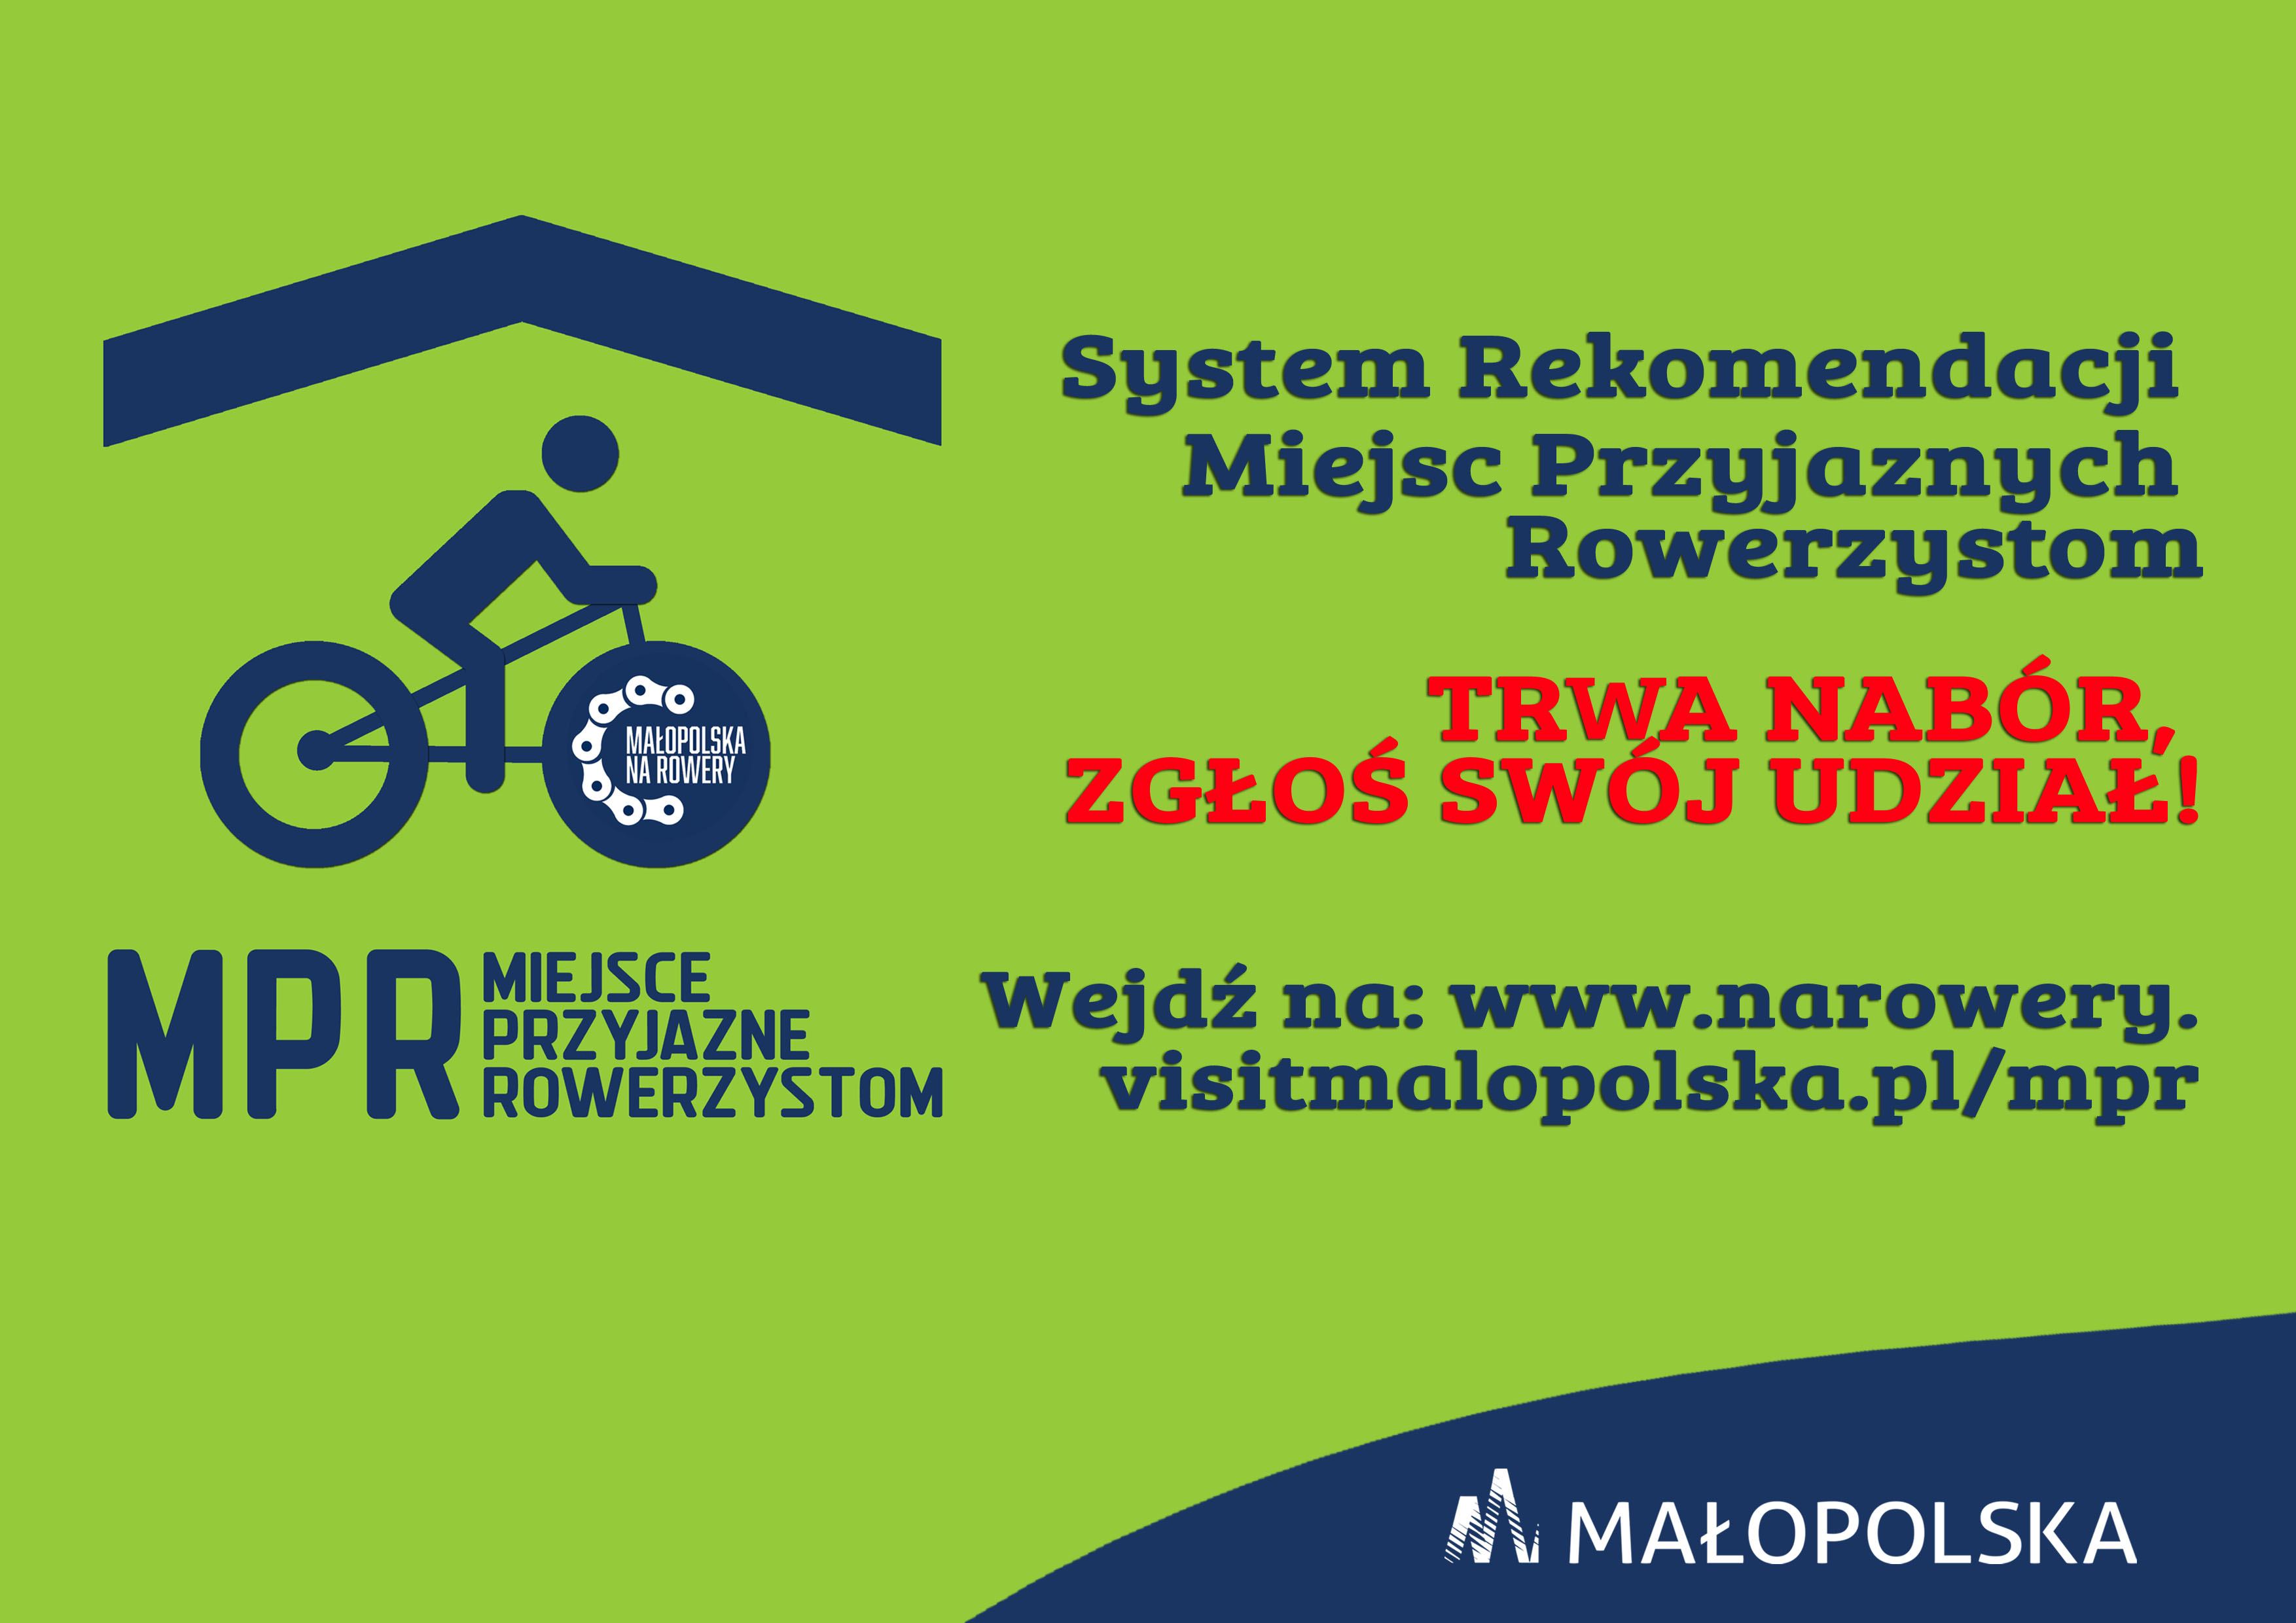 Plakat informacyjny na temat naboru do Małopolskiego Systemu Miejsc Przyjaznych Rowerzystom